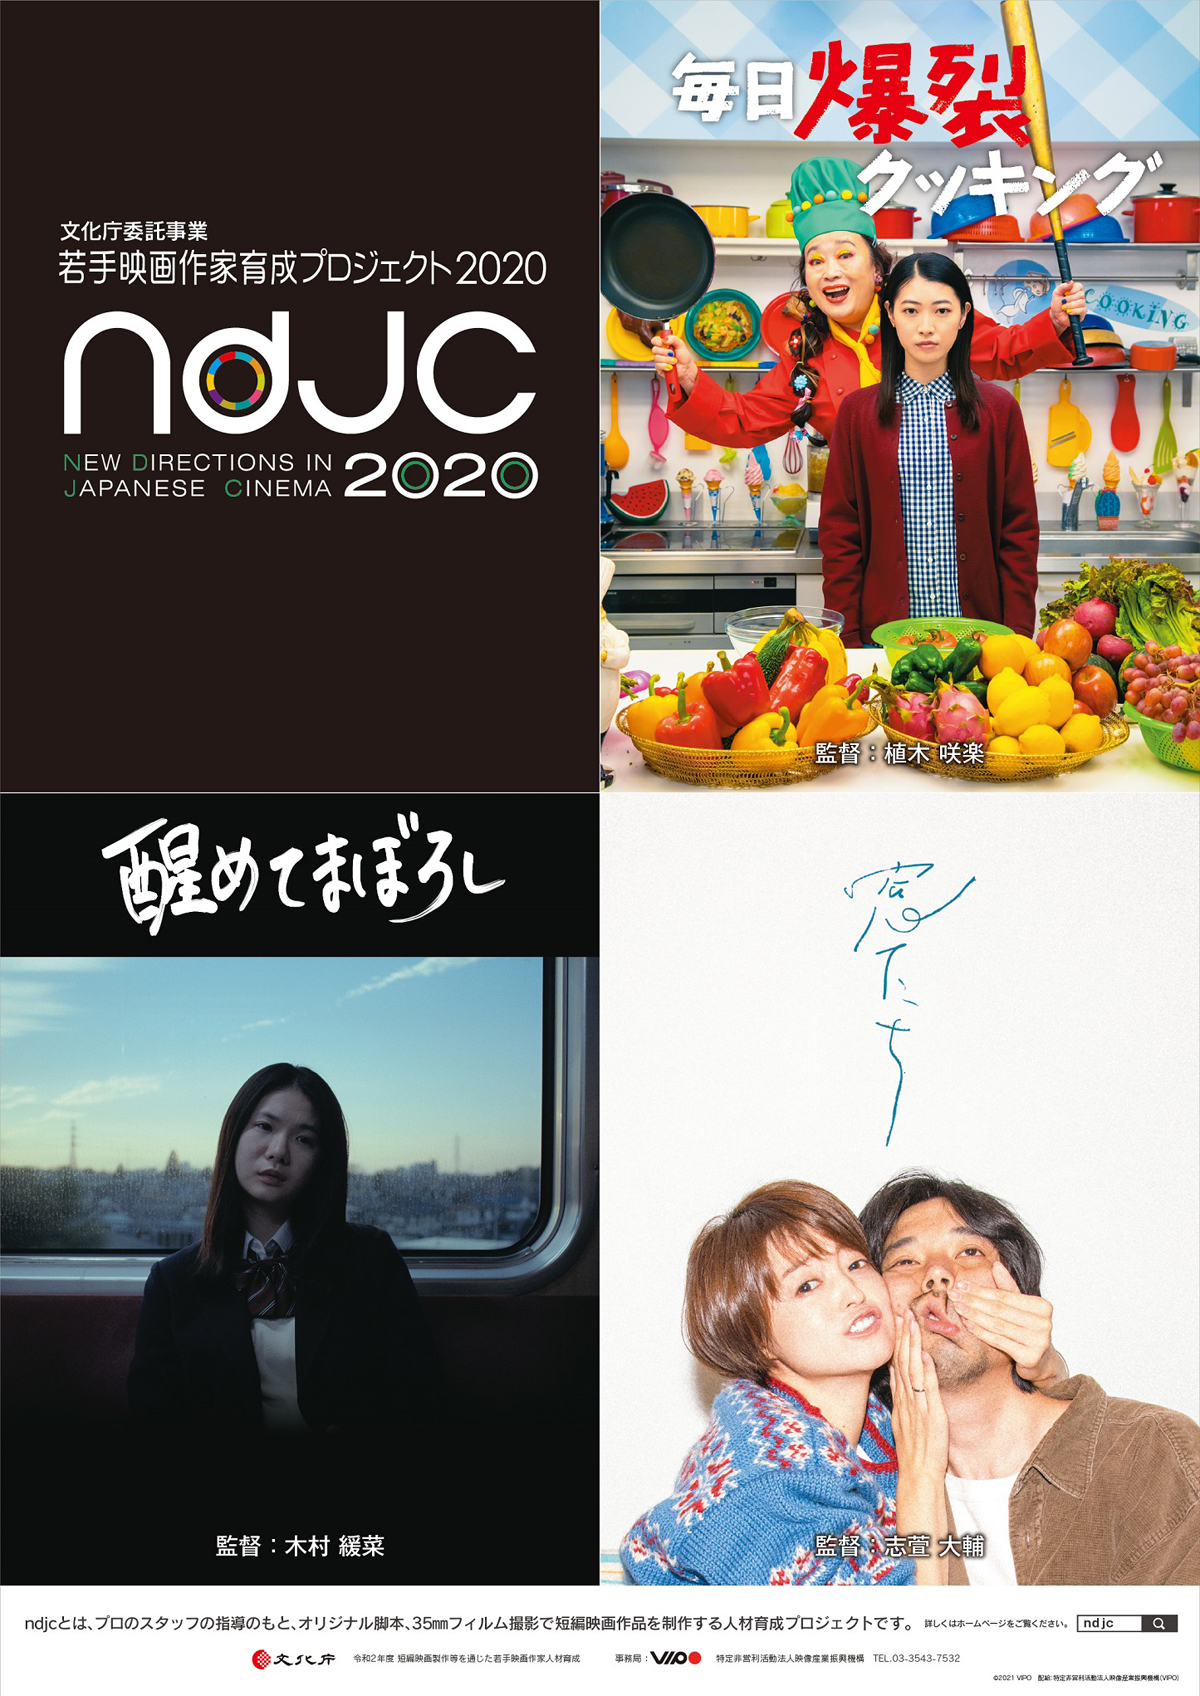 《ndjc:若手映画作家育成プロジェクト2020》の画像